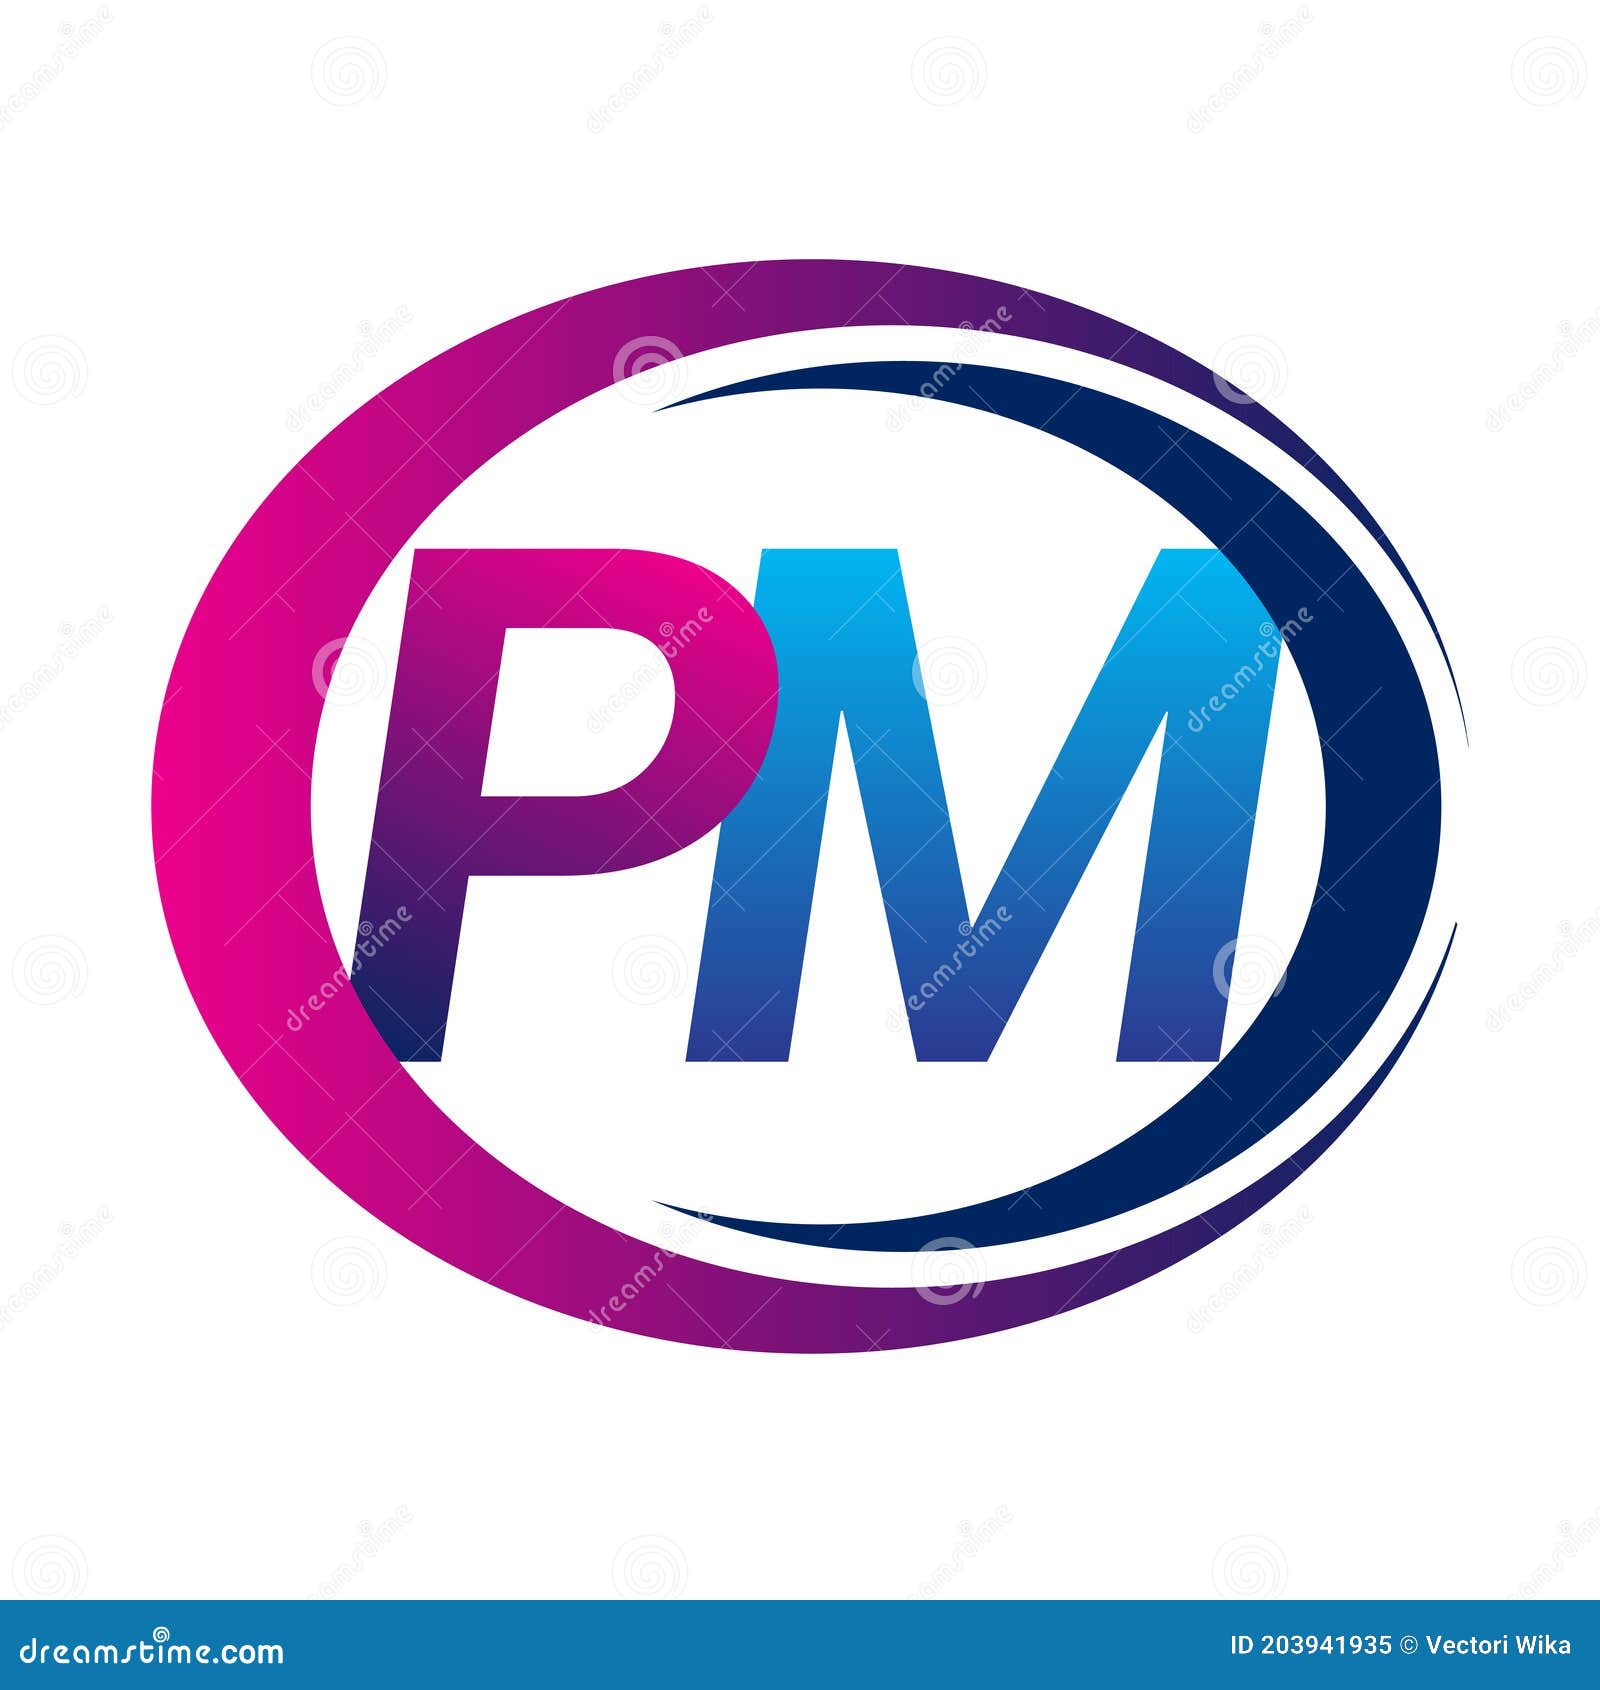 p m design